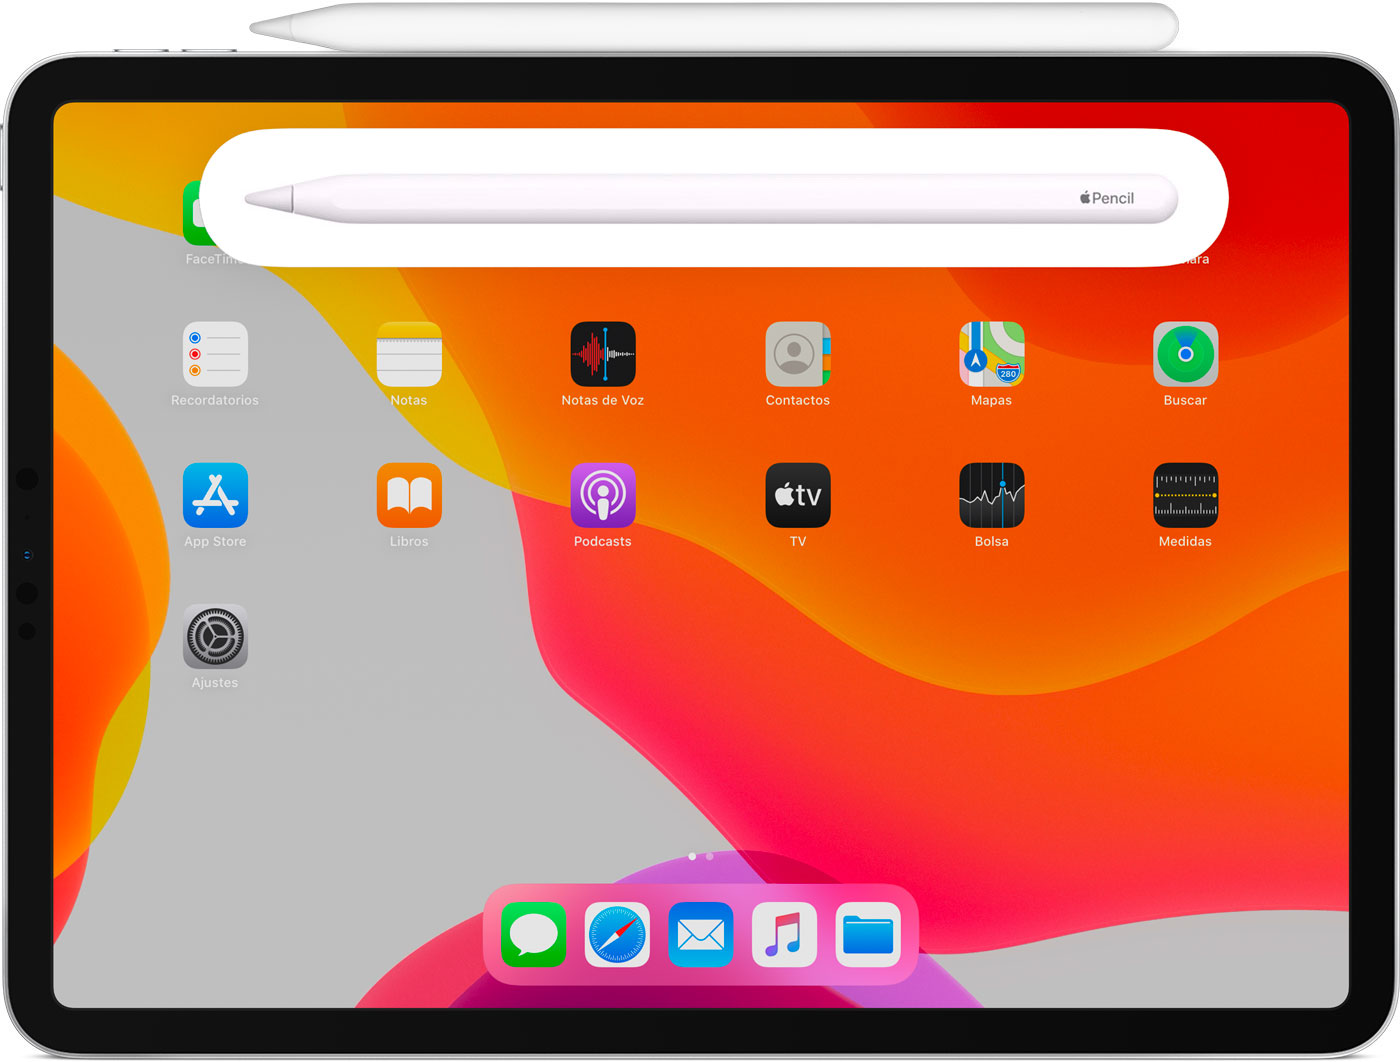 Conectar el Apple Pencil con el iPad - Soporte técnico de Apple (ES)